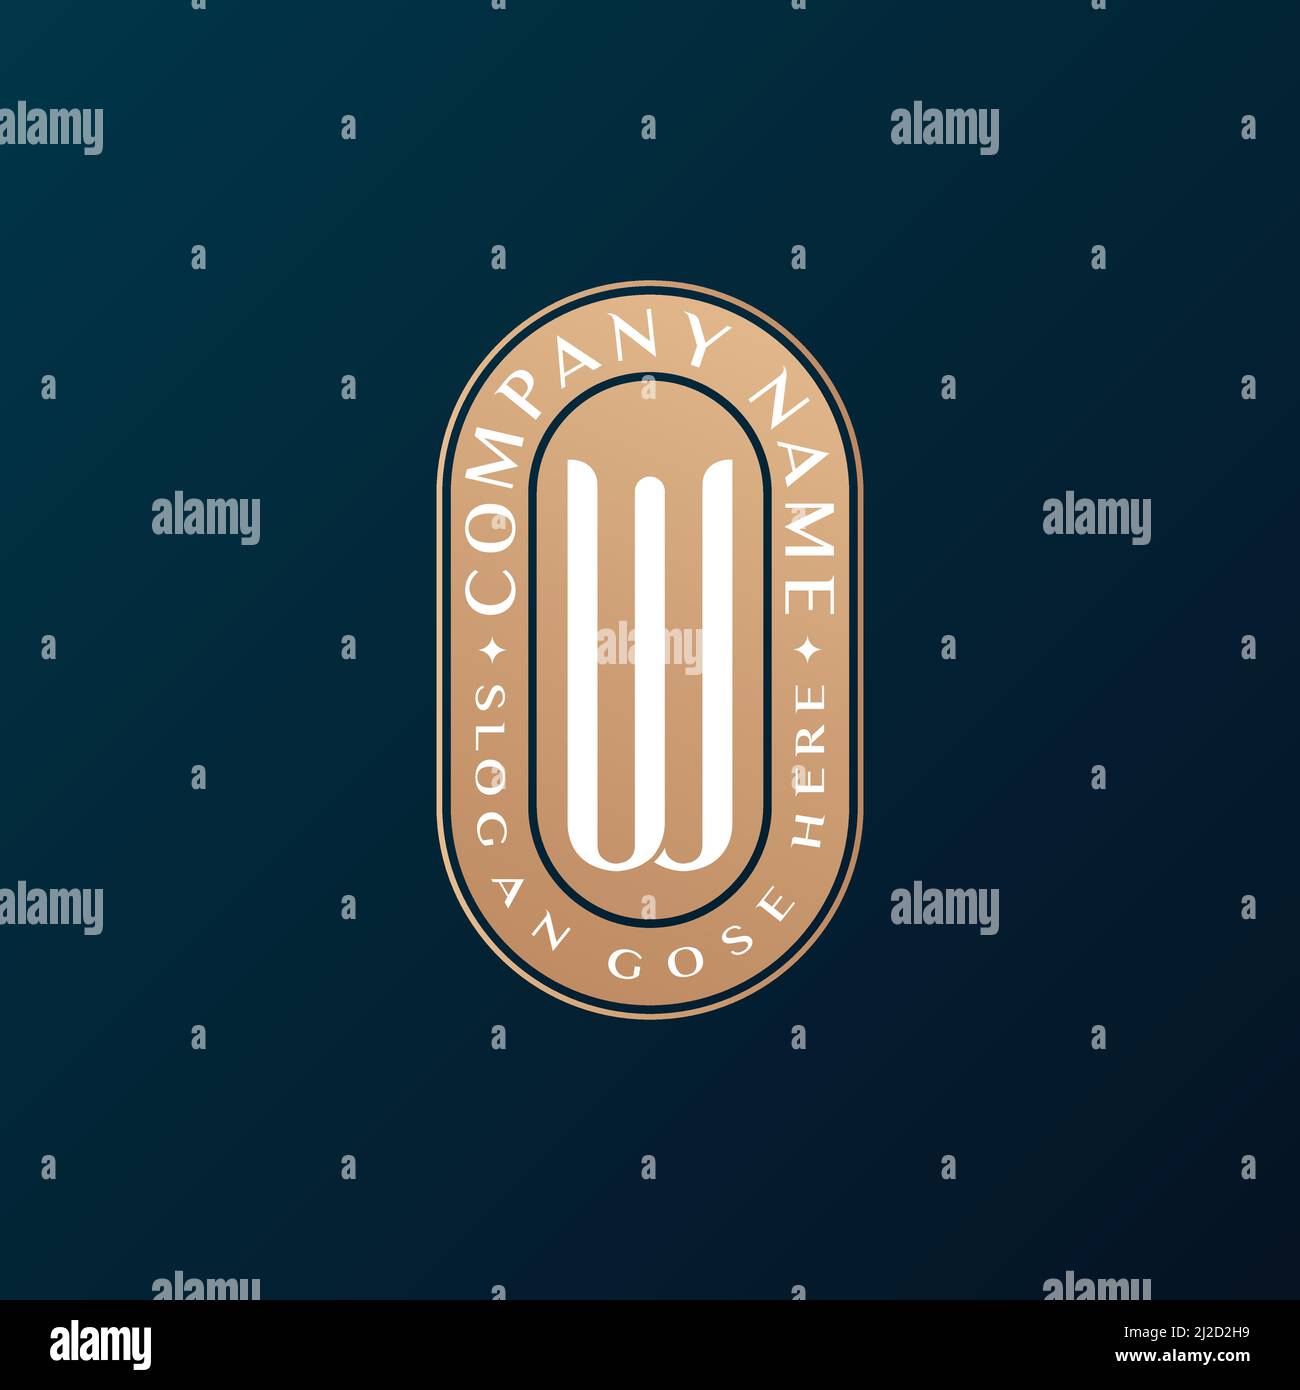 Abstrait Emblem Premium luxe identité d'entreprise élégante lettre W logo design Illustration de Vecteur